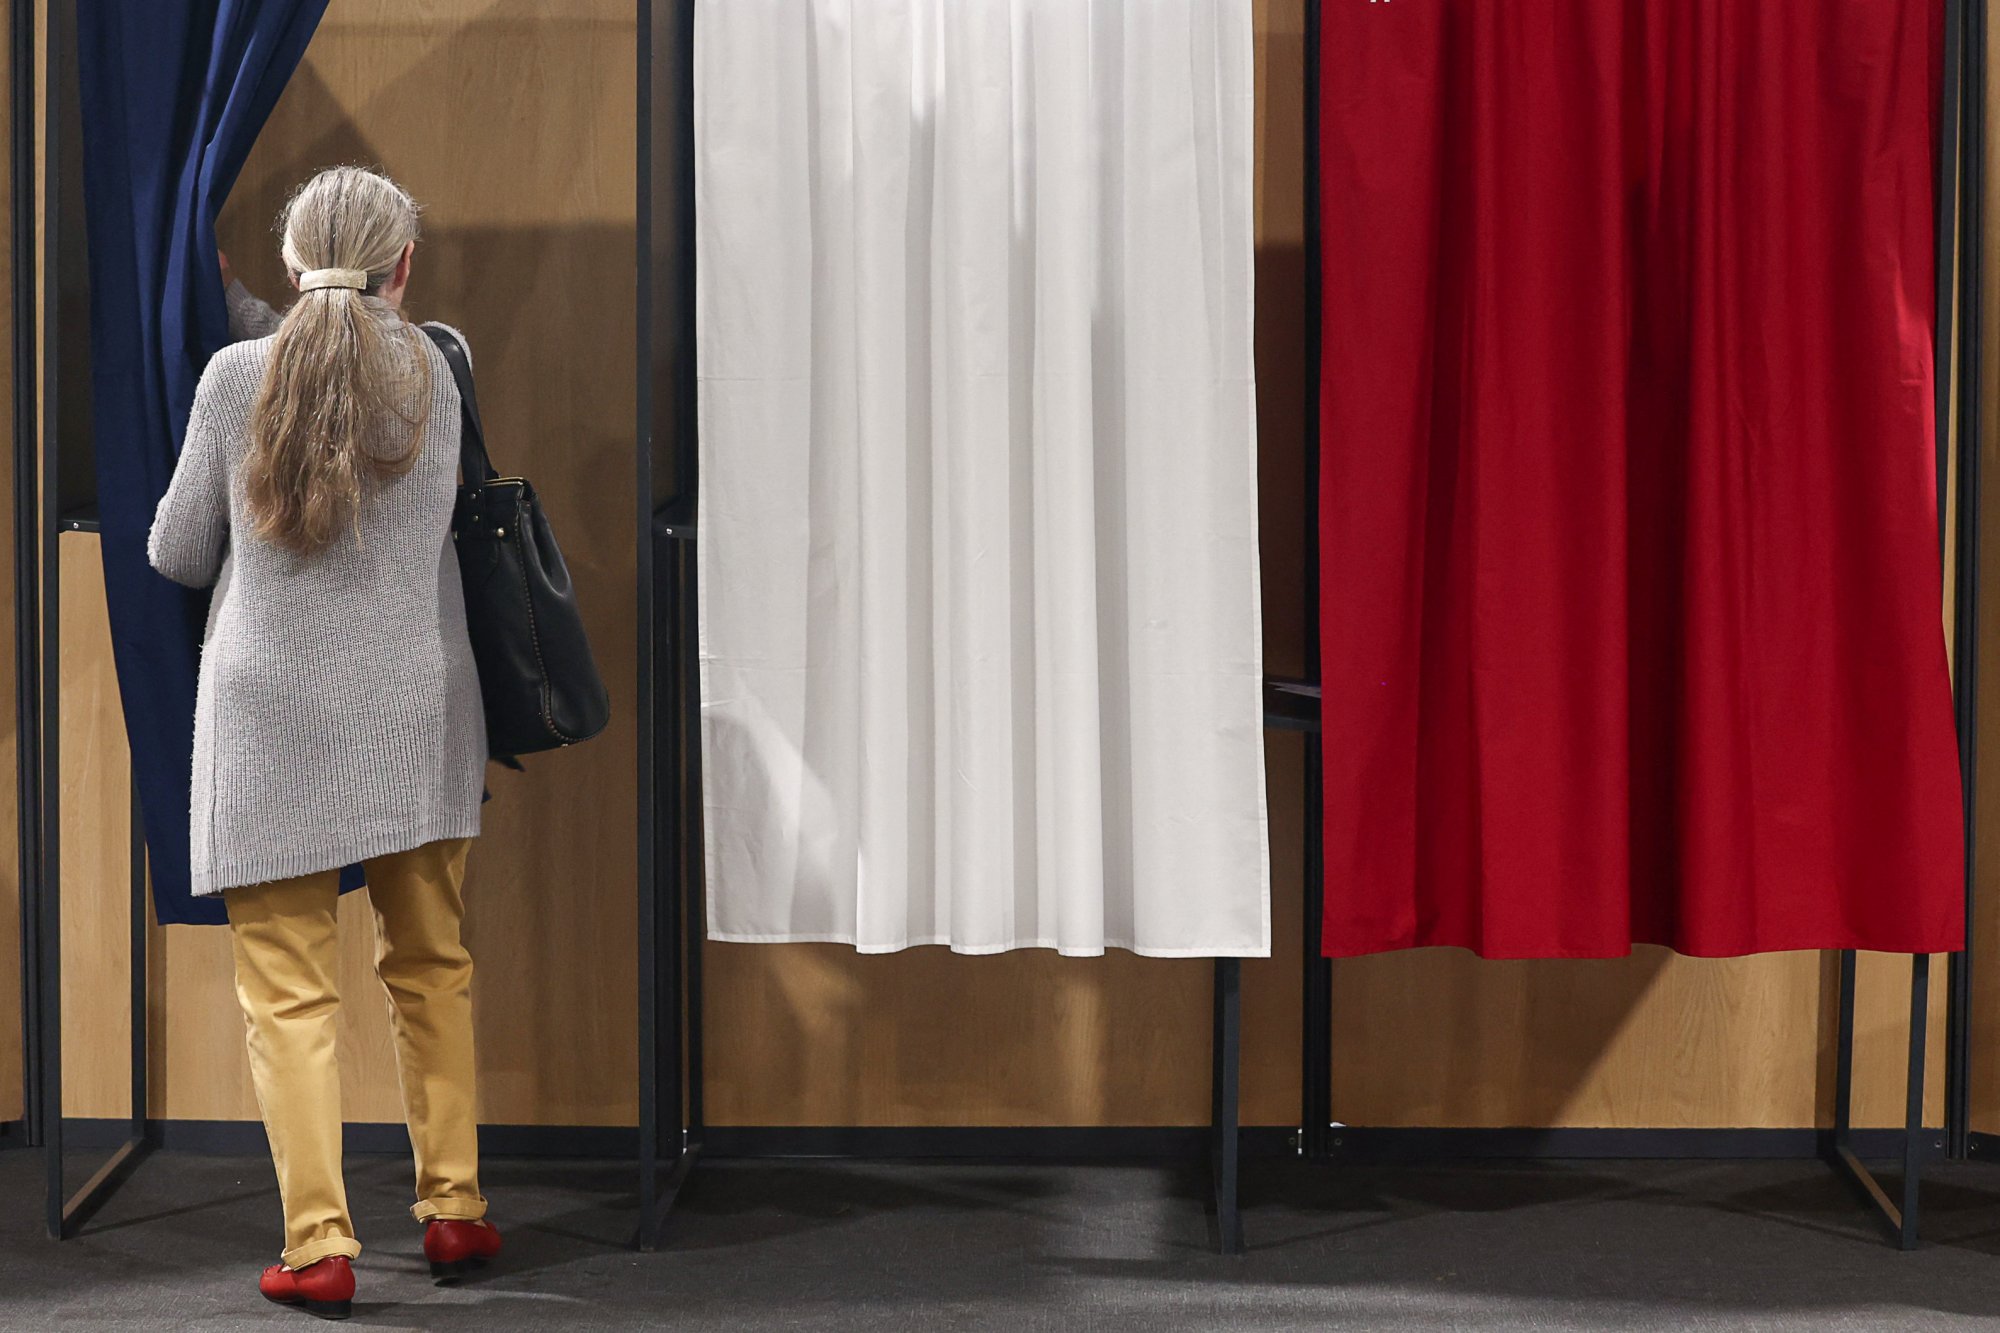 Eκλογές στη Γαλλία: Αυτά είναι τα πρώτα exit polls – Ποιος προηγείται